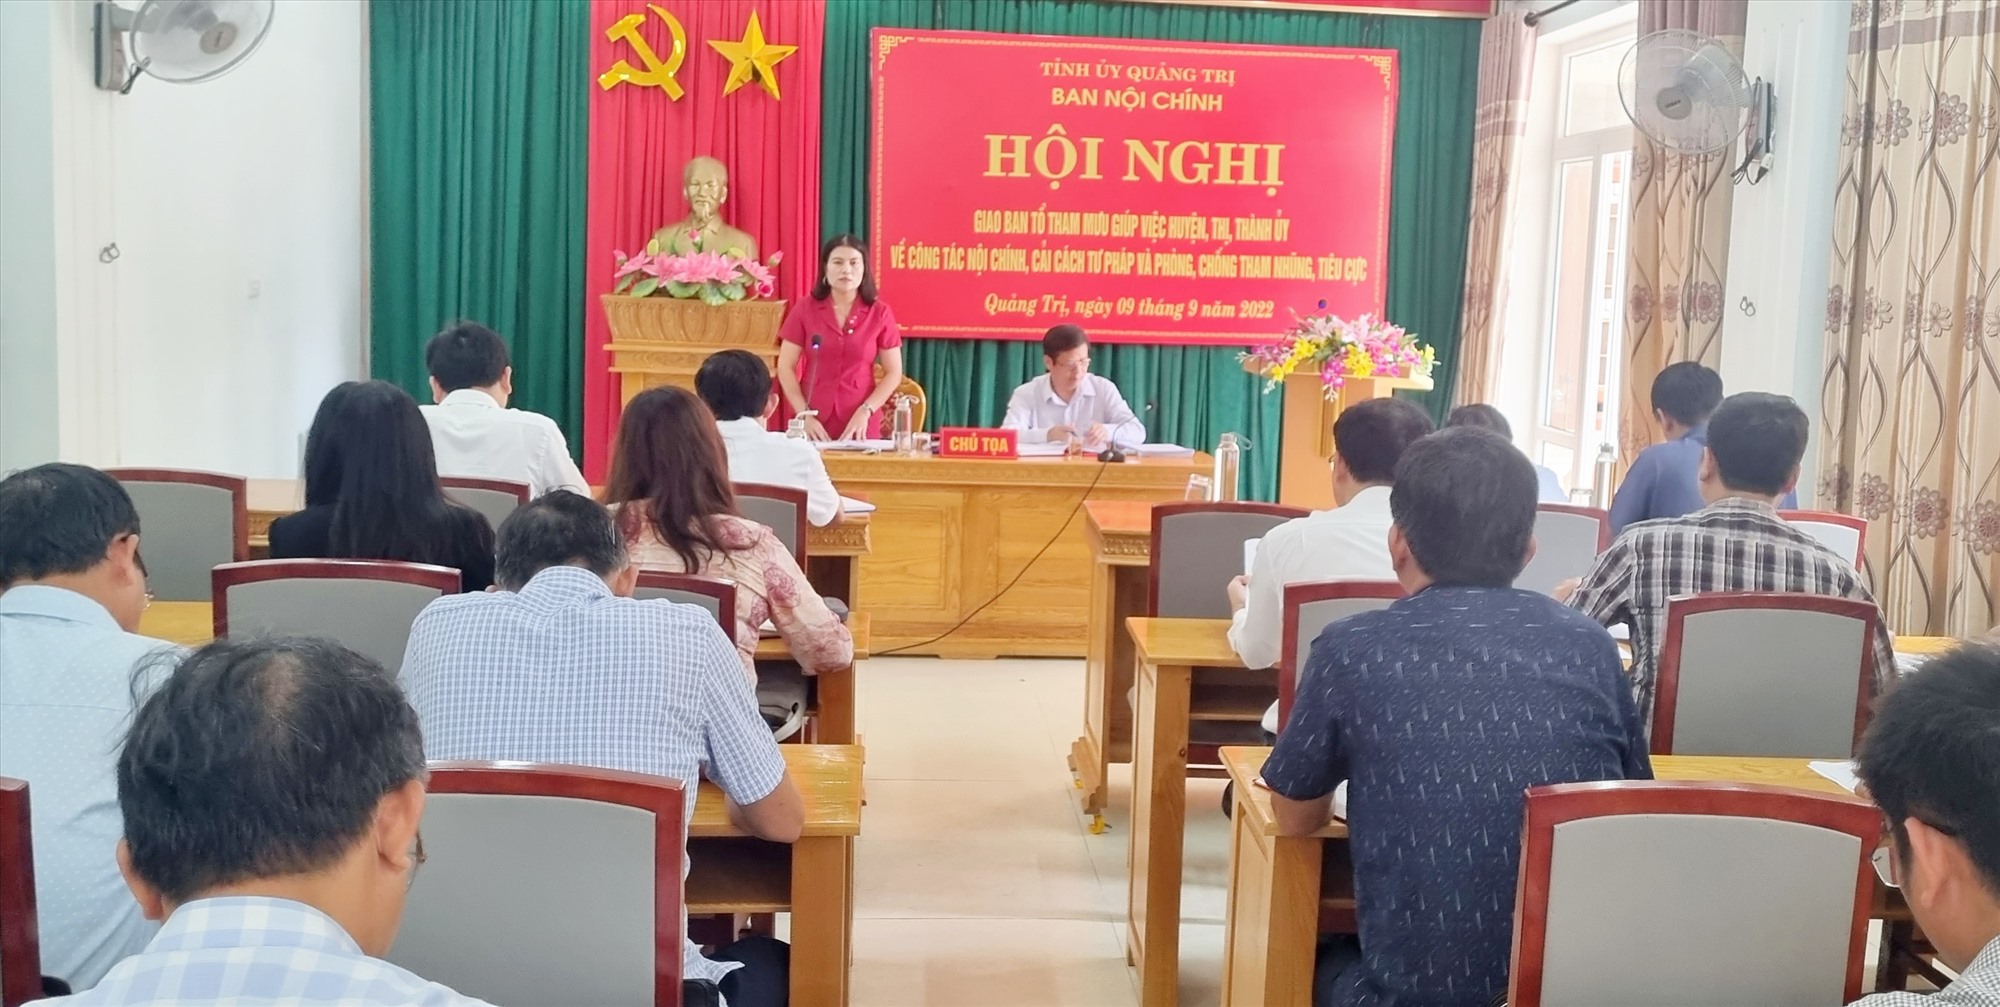 Trưởng Ban Nội chính Tỉnh ủy Ly Kiều Vân phát biểu tại hội nghị - Ảnh: K.S